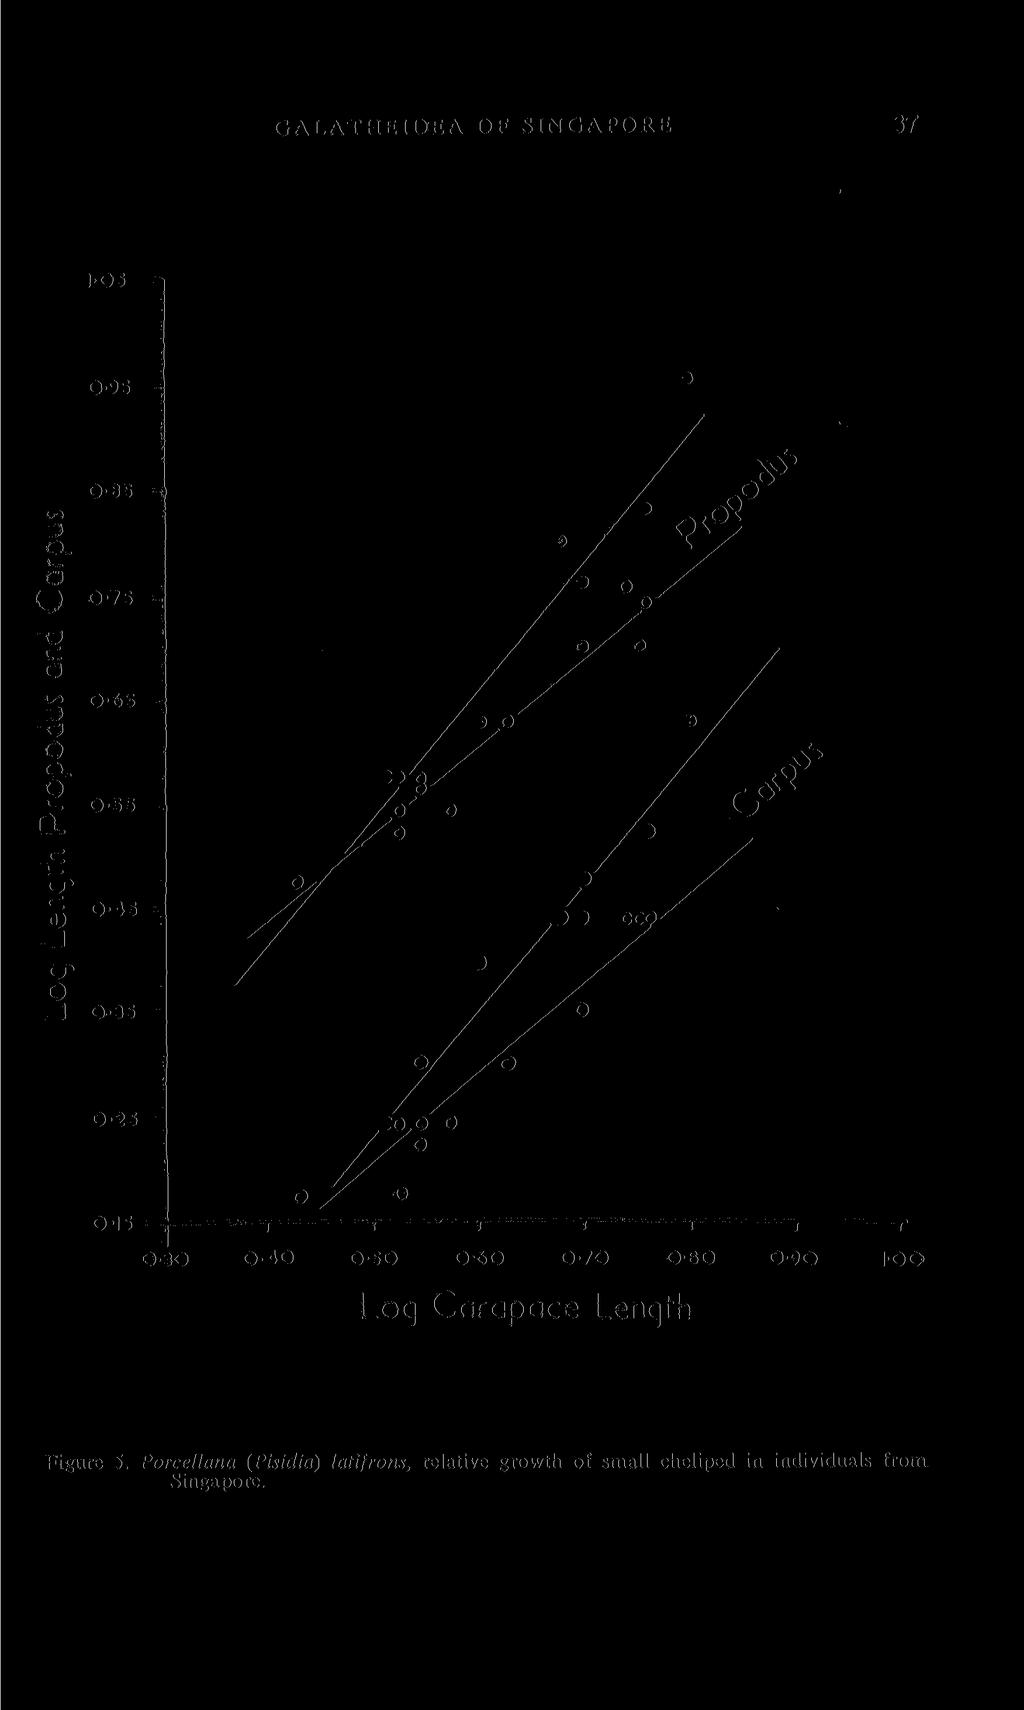 GALATHEIDEA; OF SINGAPORE 37 0-30 0-40 0-50 0-60 0-70 0-80 0-90 IOO Loq Carapace Lenqth Figure 5.